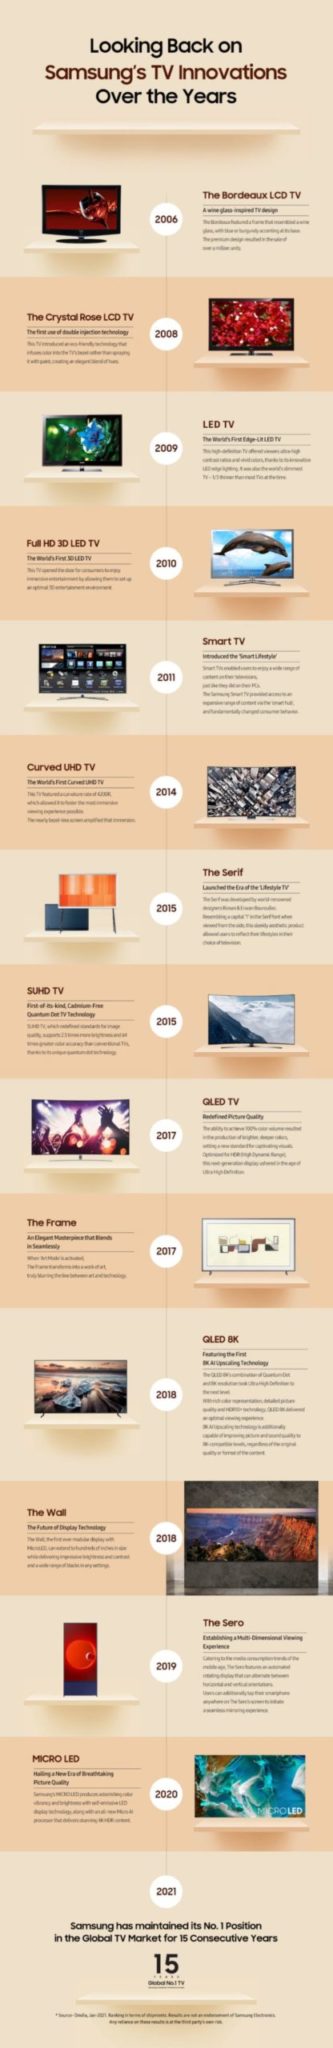 Cronología del liderazgo de los televisores Samsung 